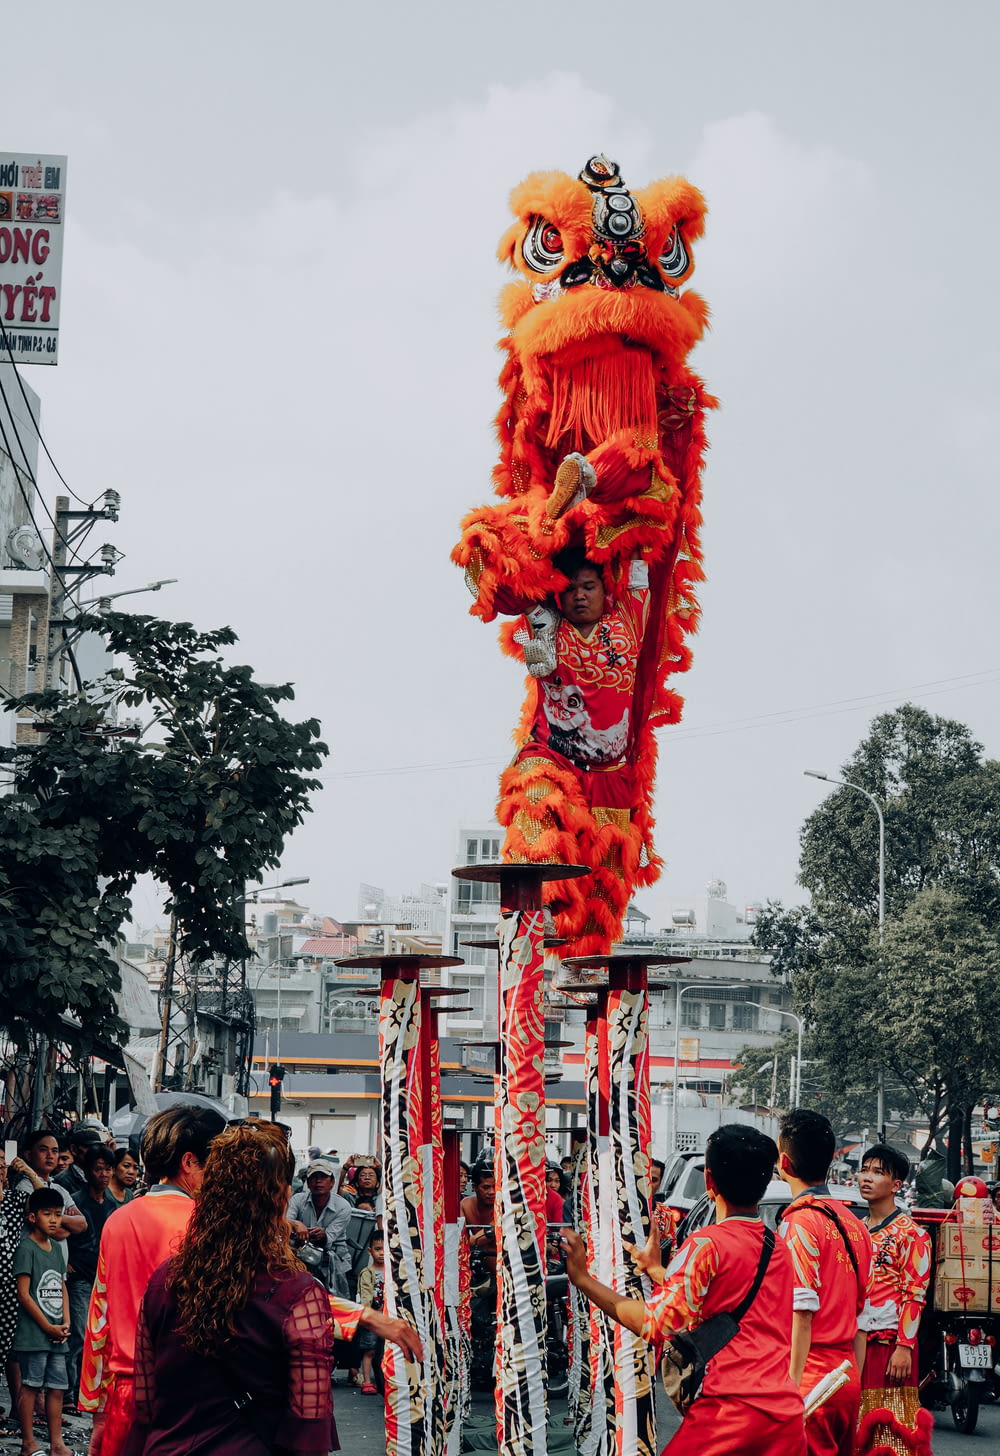 personnes marchant dans la rue avec une statue de dragon rouge pendant la journée